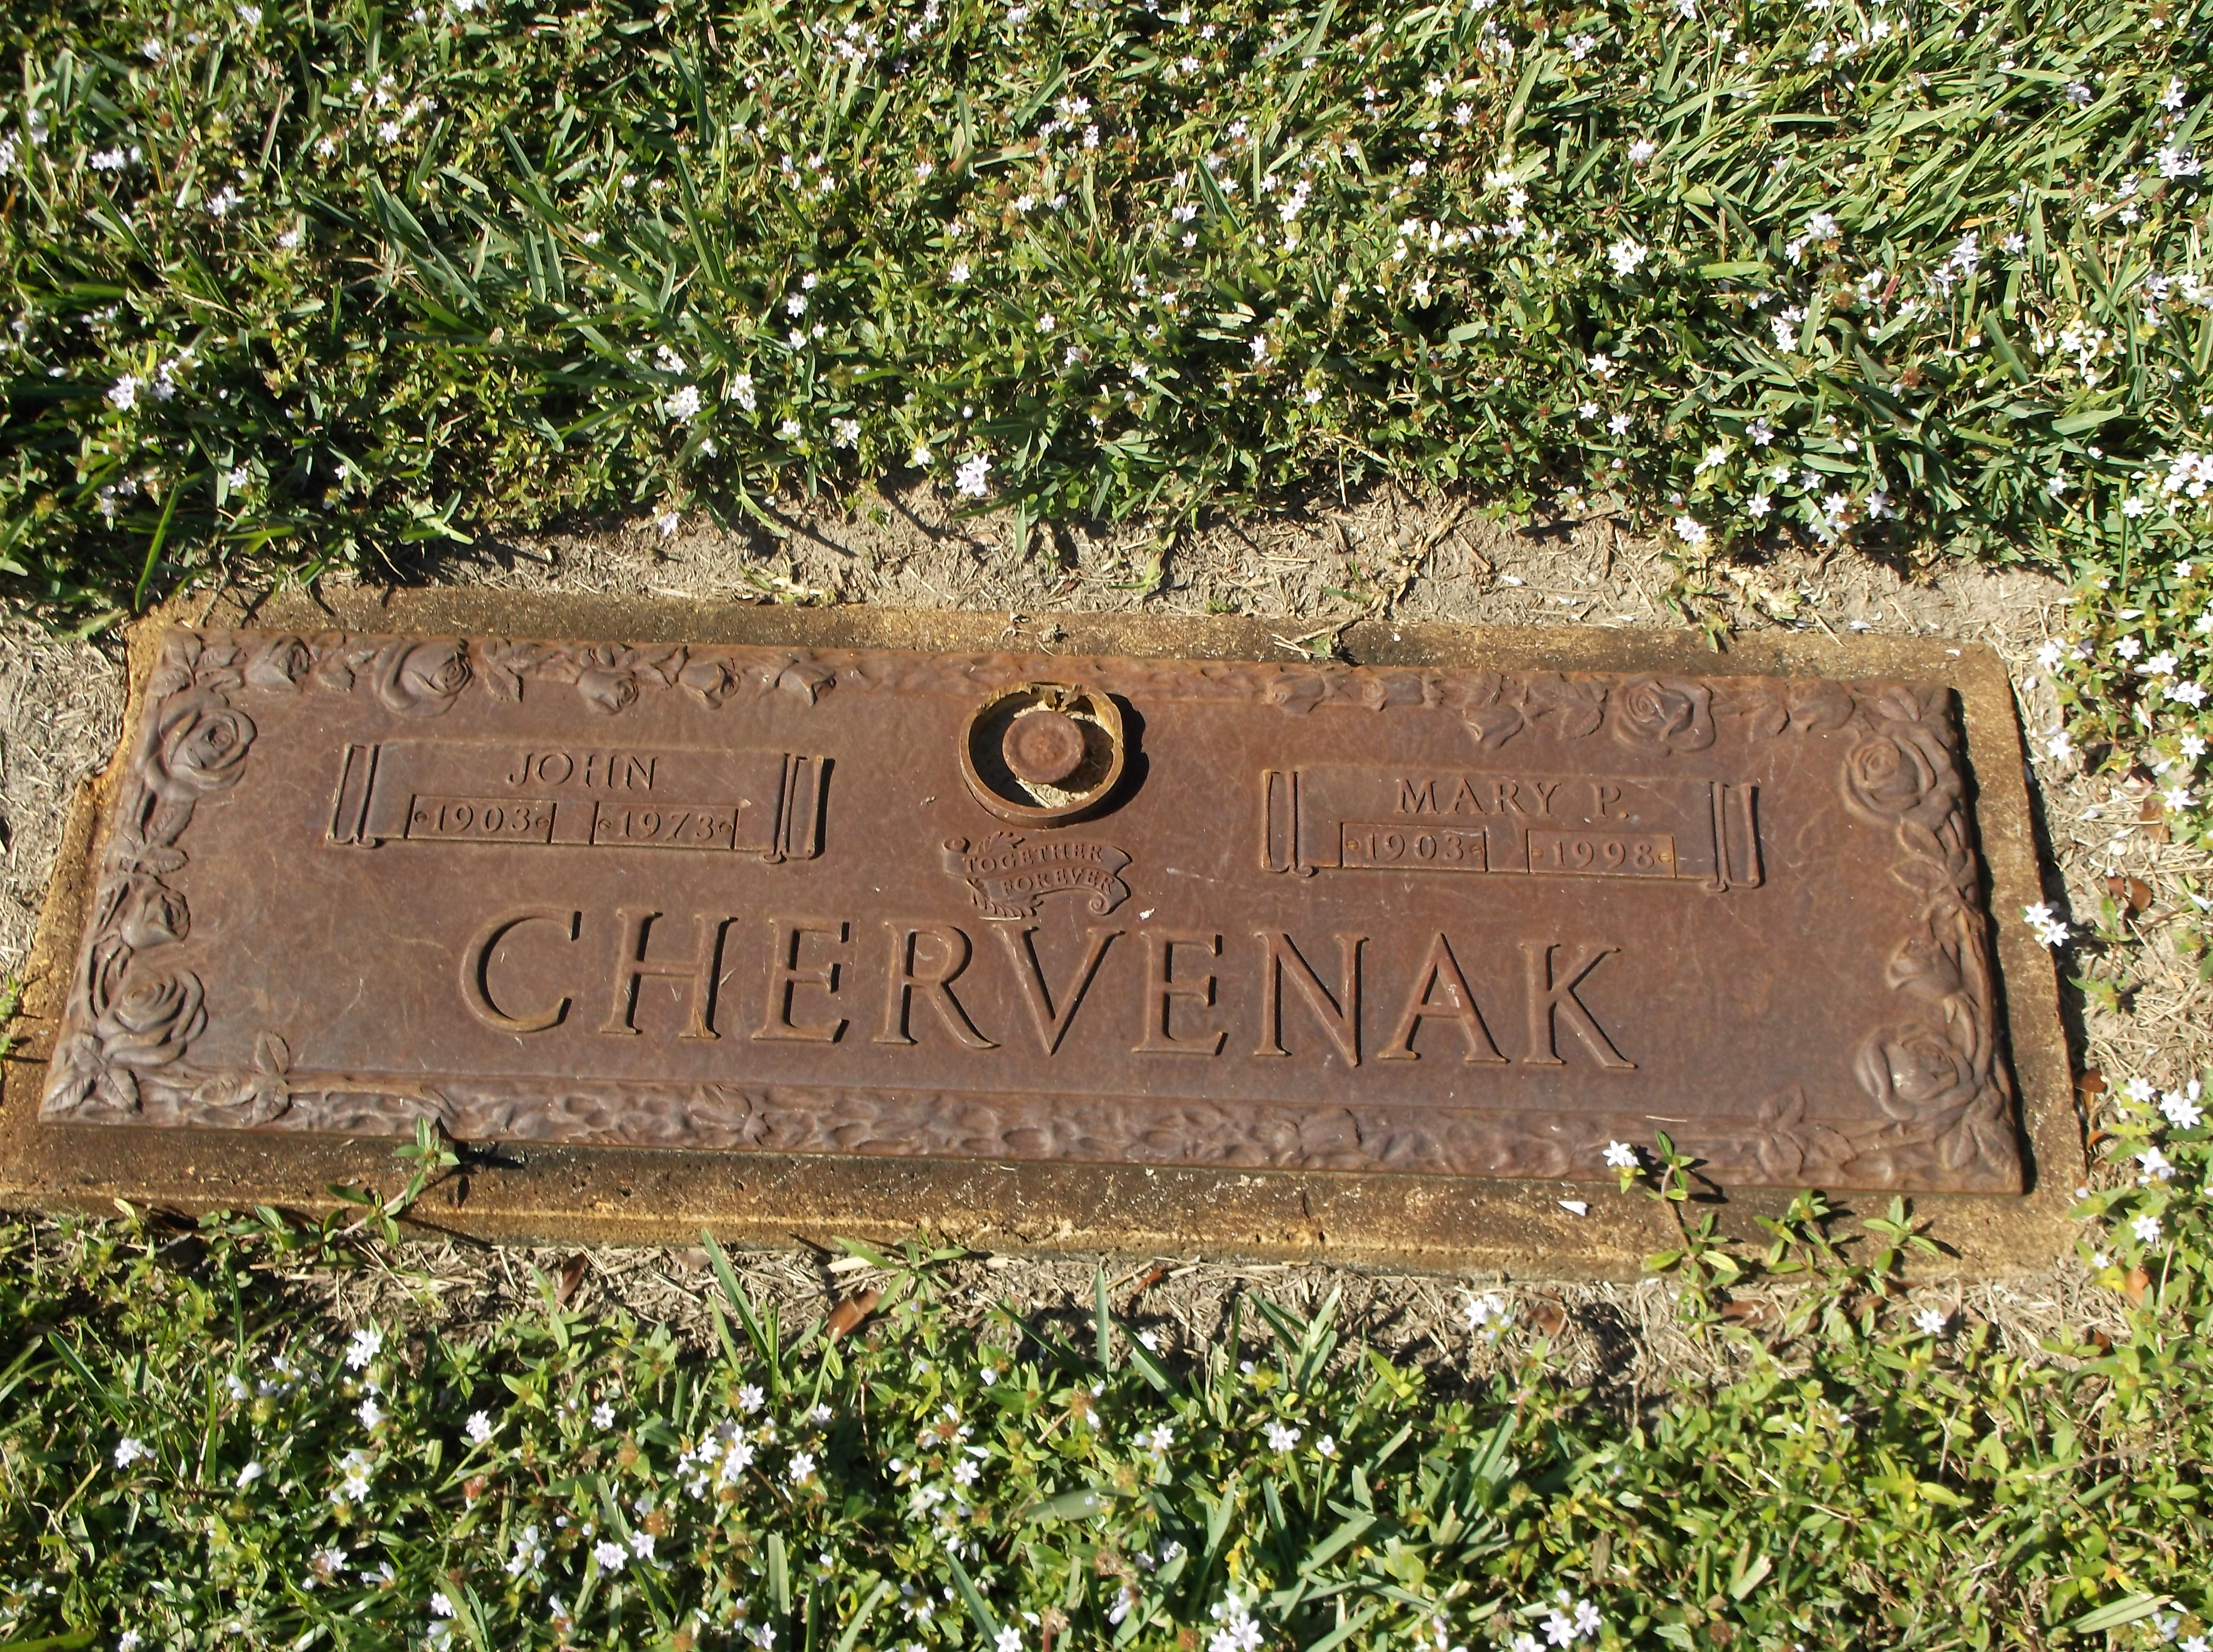 John Chervenak